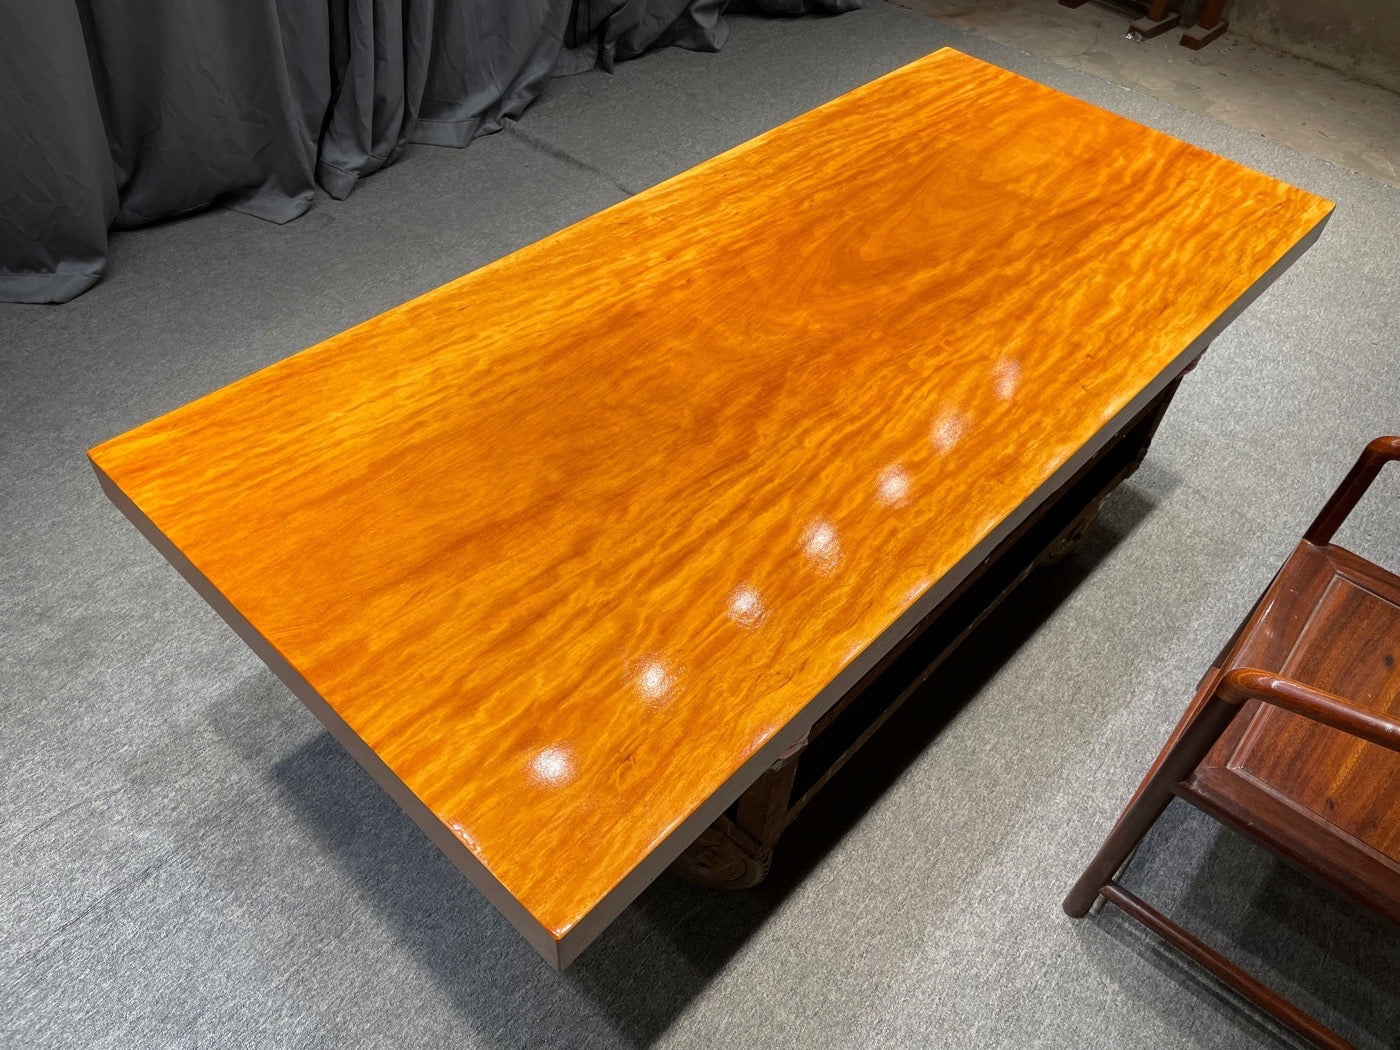 مكتب خشبي طبيعي مخصص لتناول الطعام، طاولة باللون البرتقالي